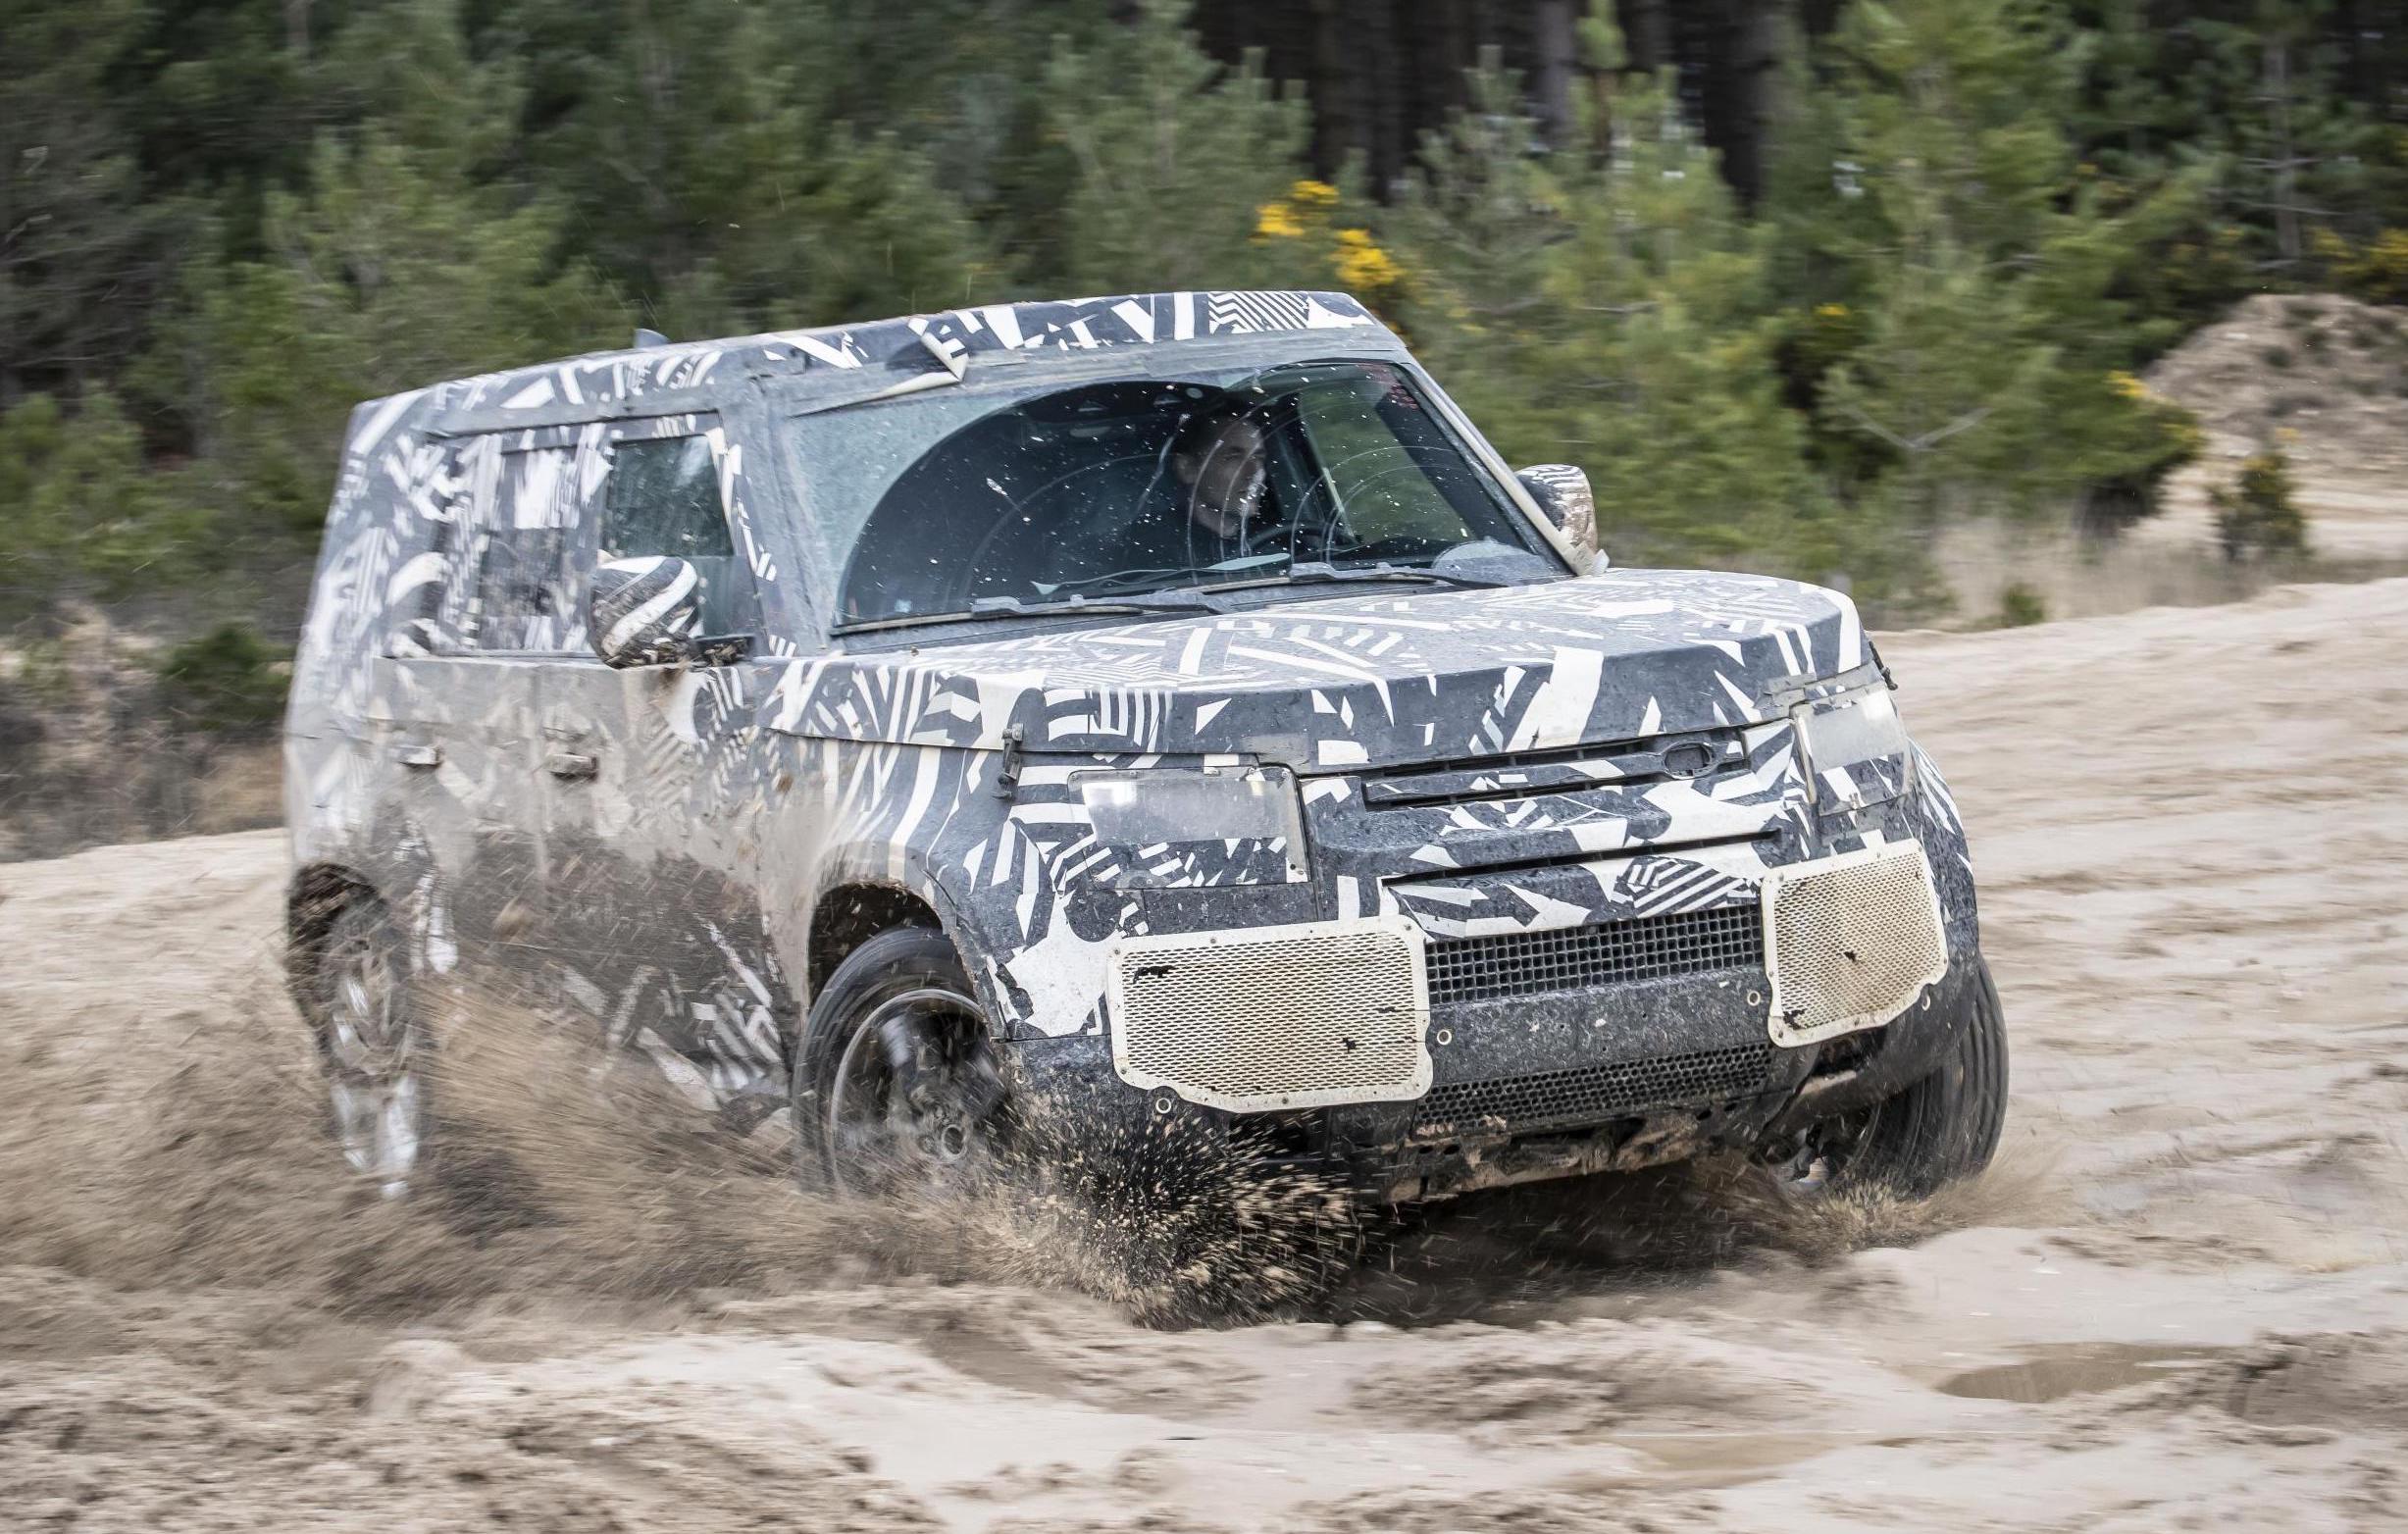 2020 Land Rover Defender testing surpasses 1.2 million km